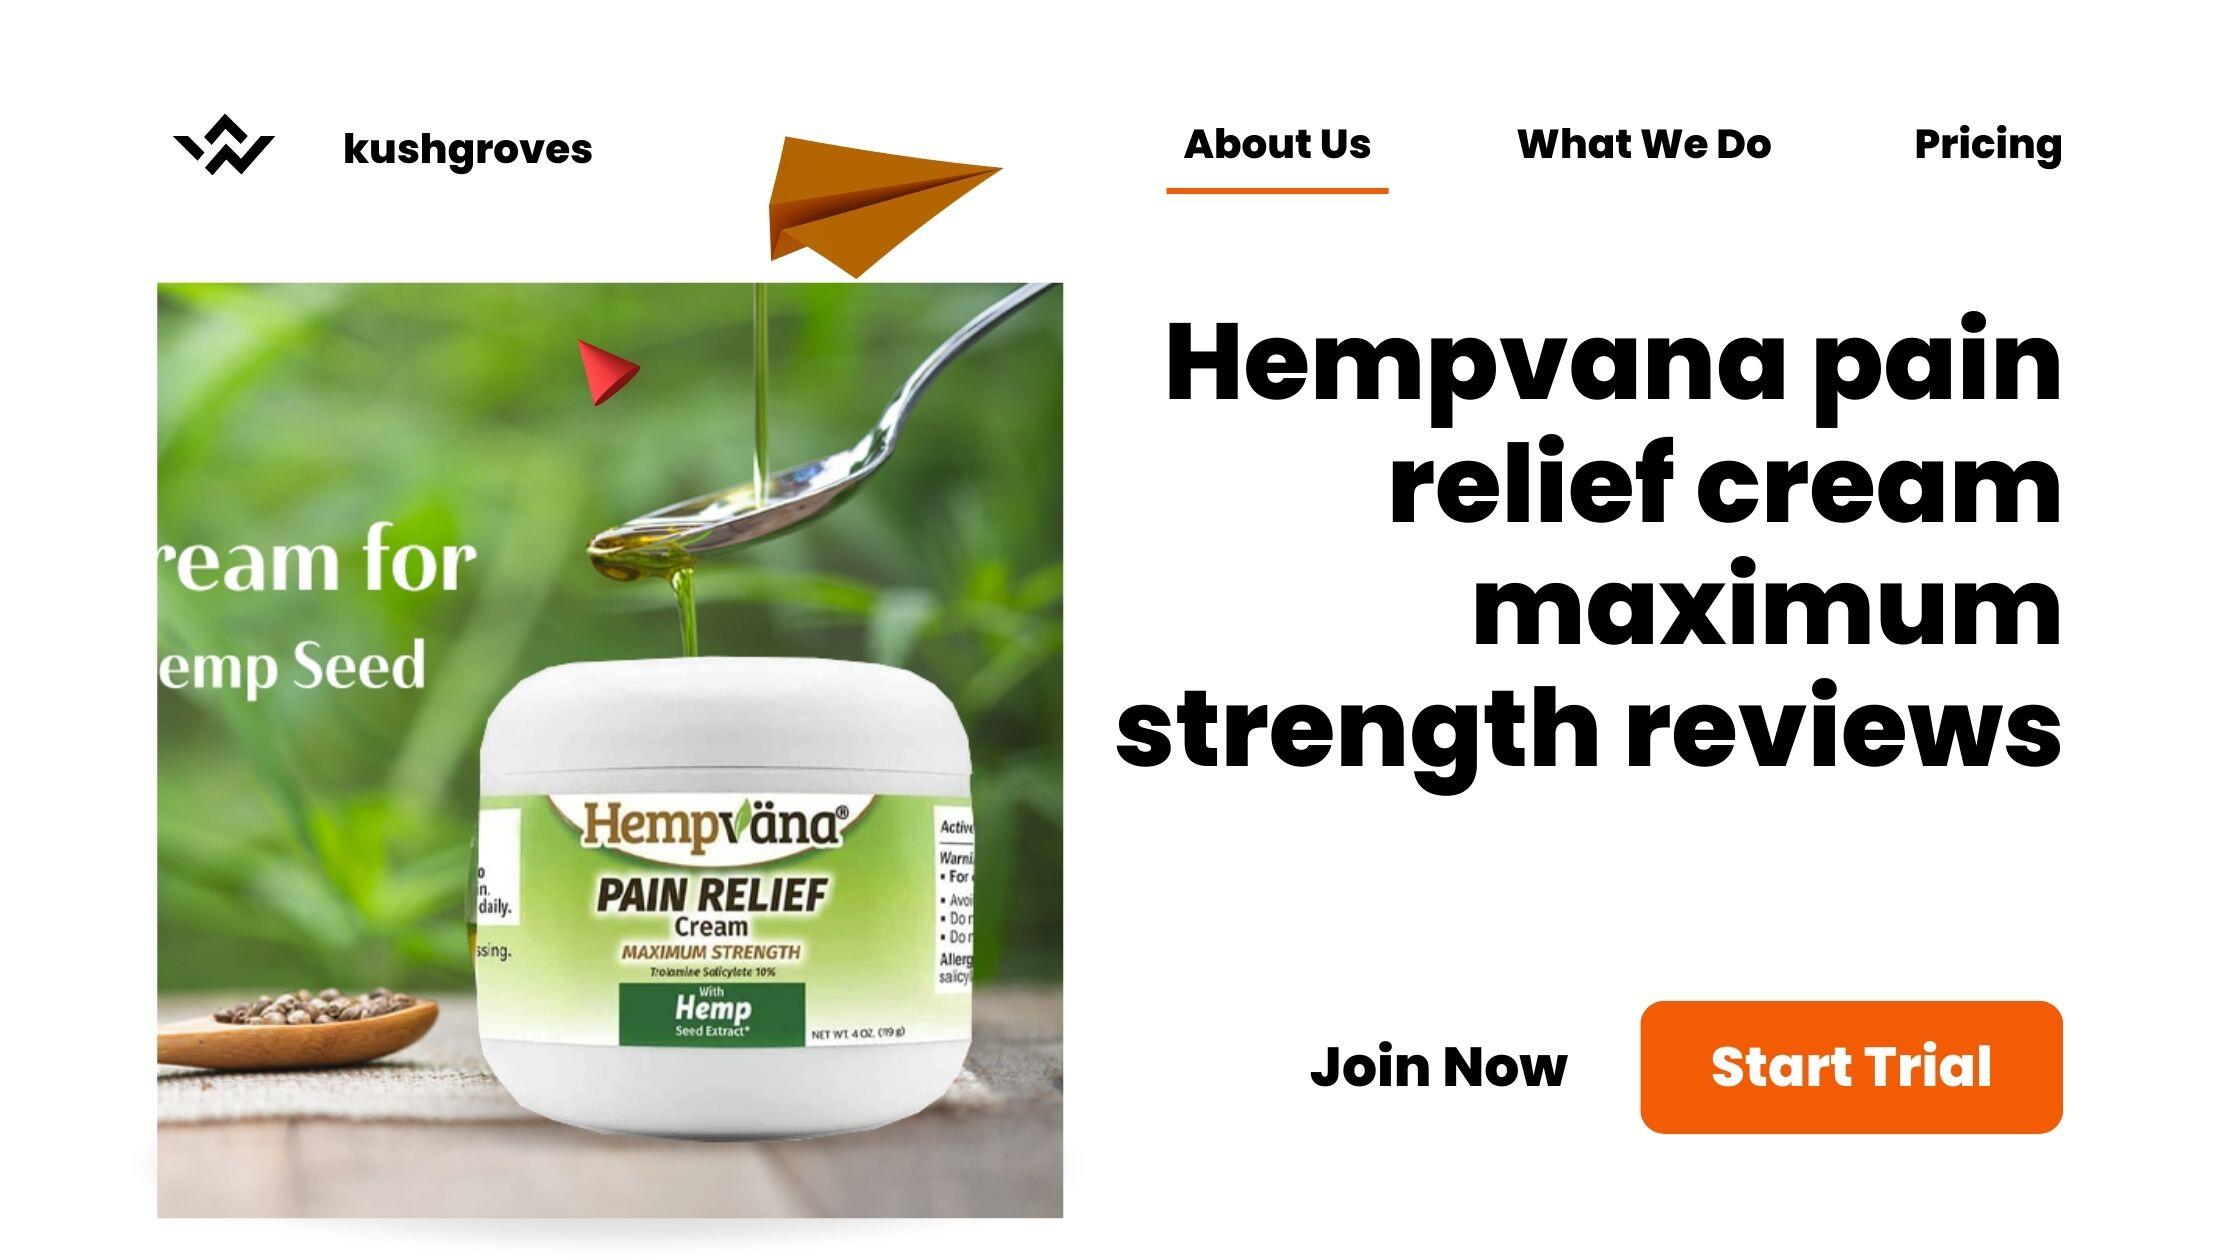 hempvana pain relief cream, hempvana pain relief cream maximum strength,